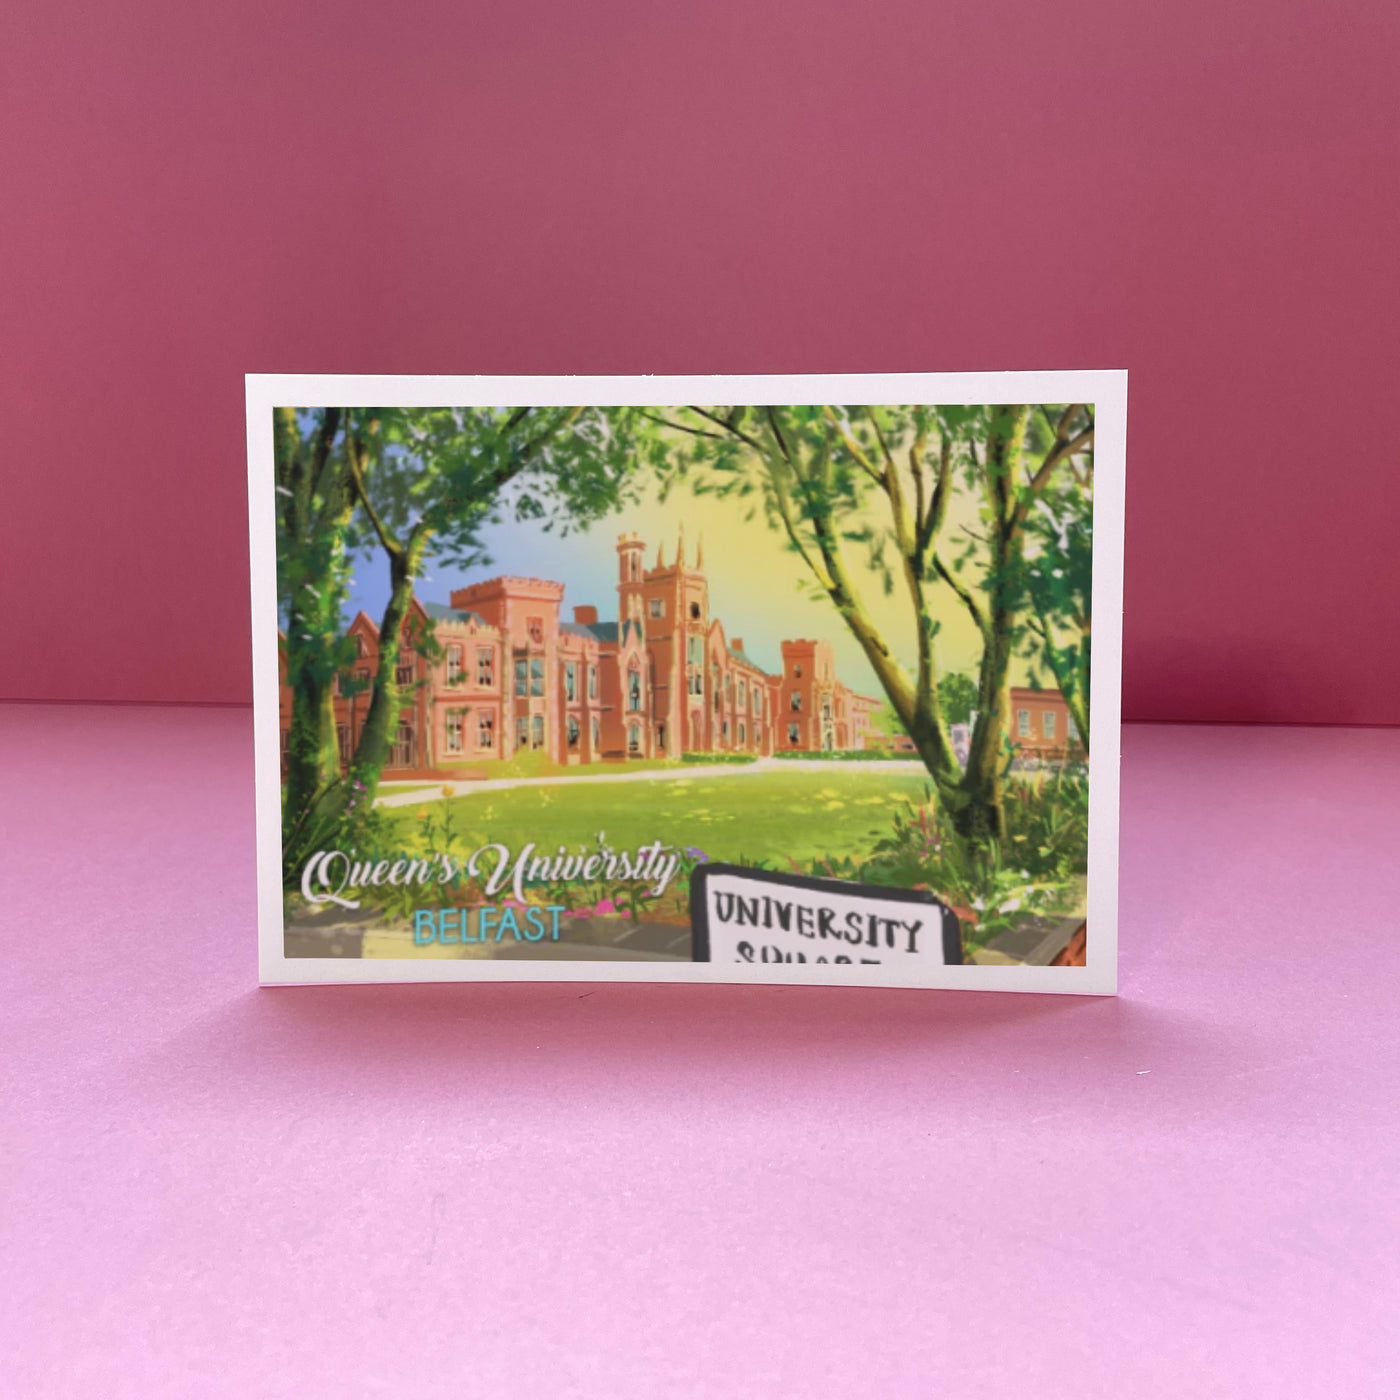 Postkarte der Queen's University 